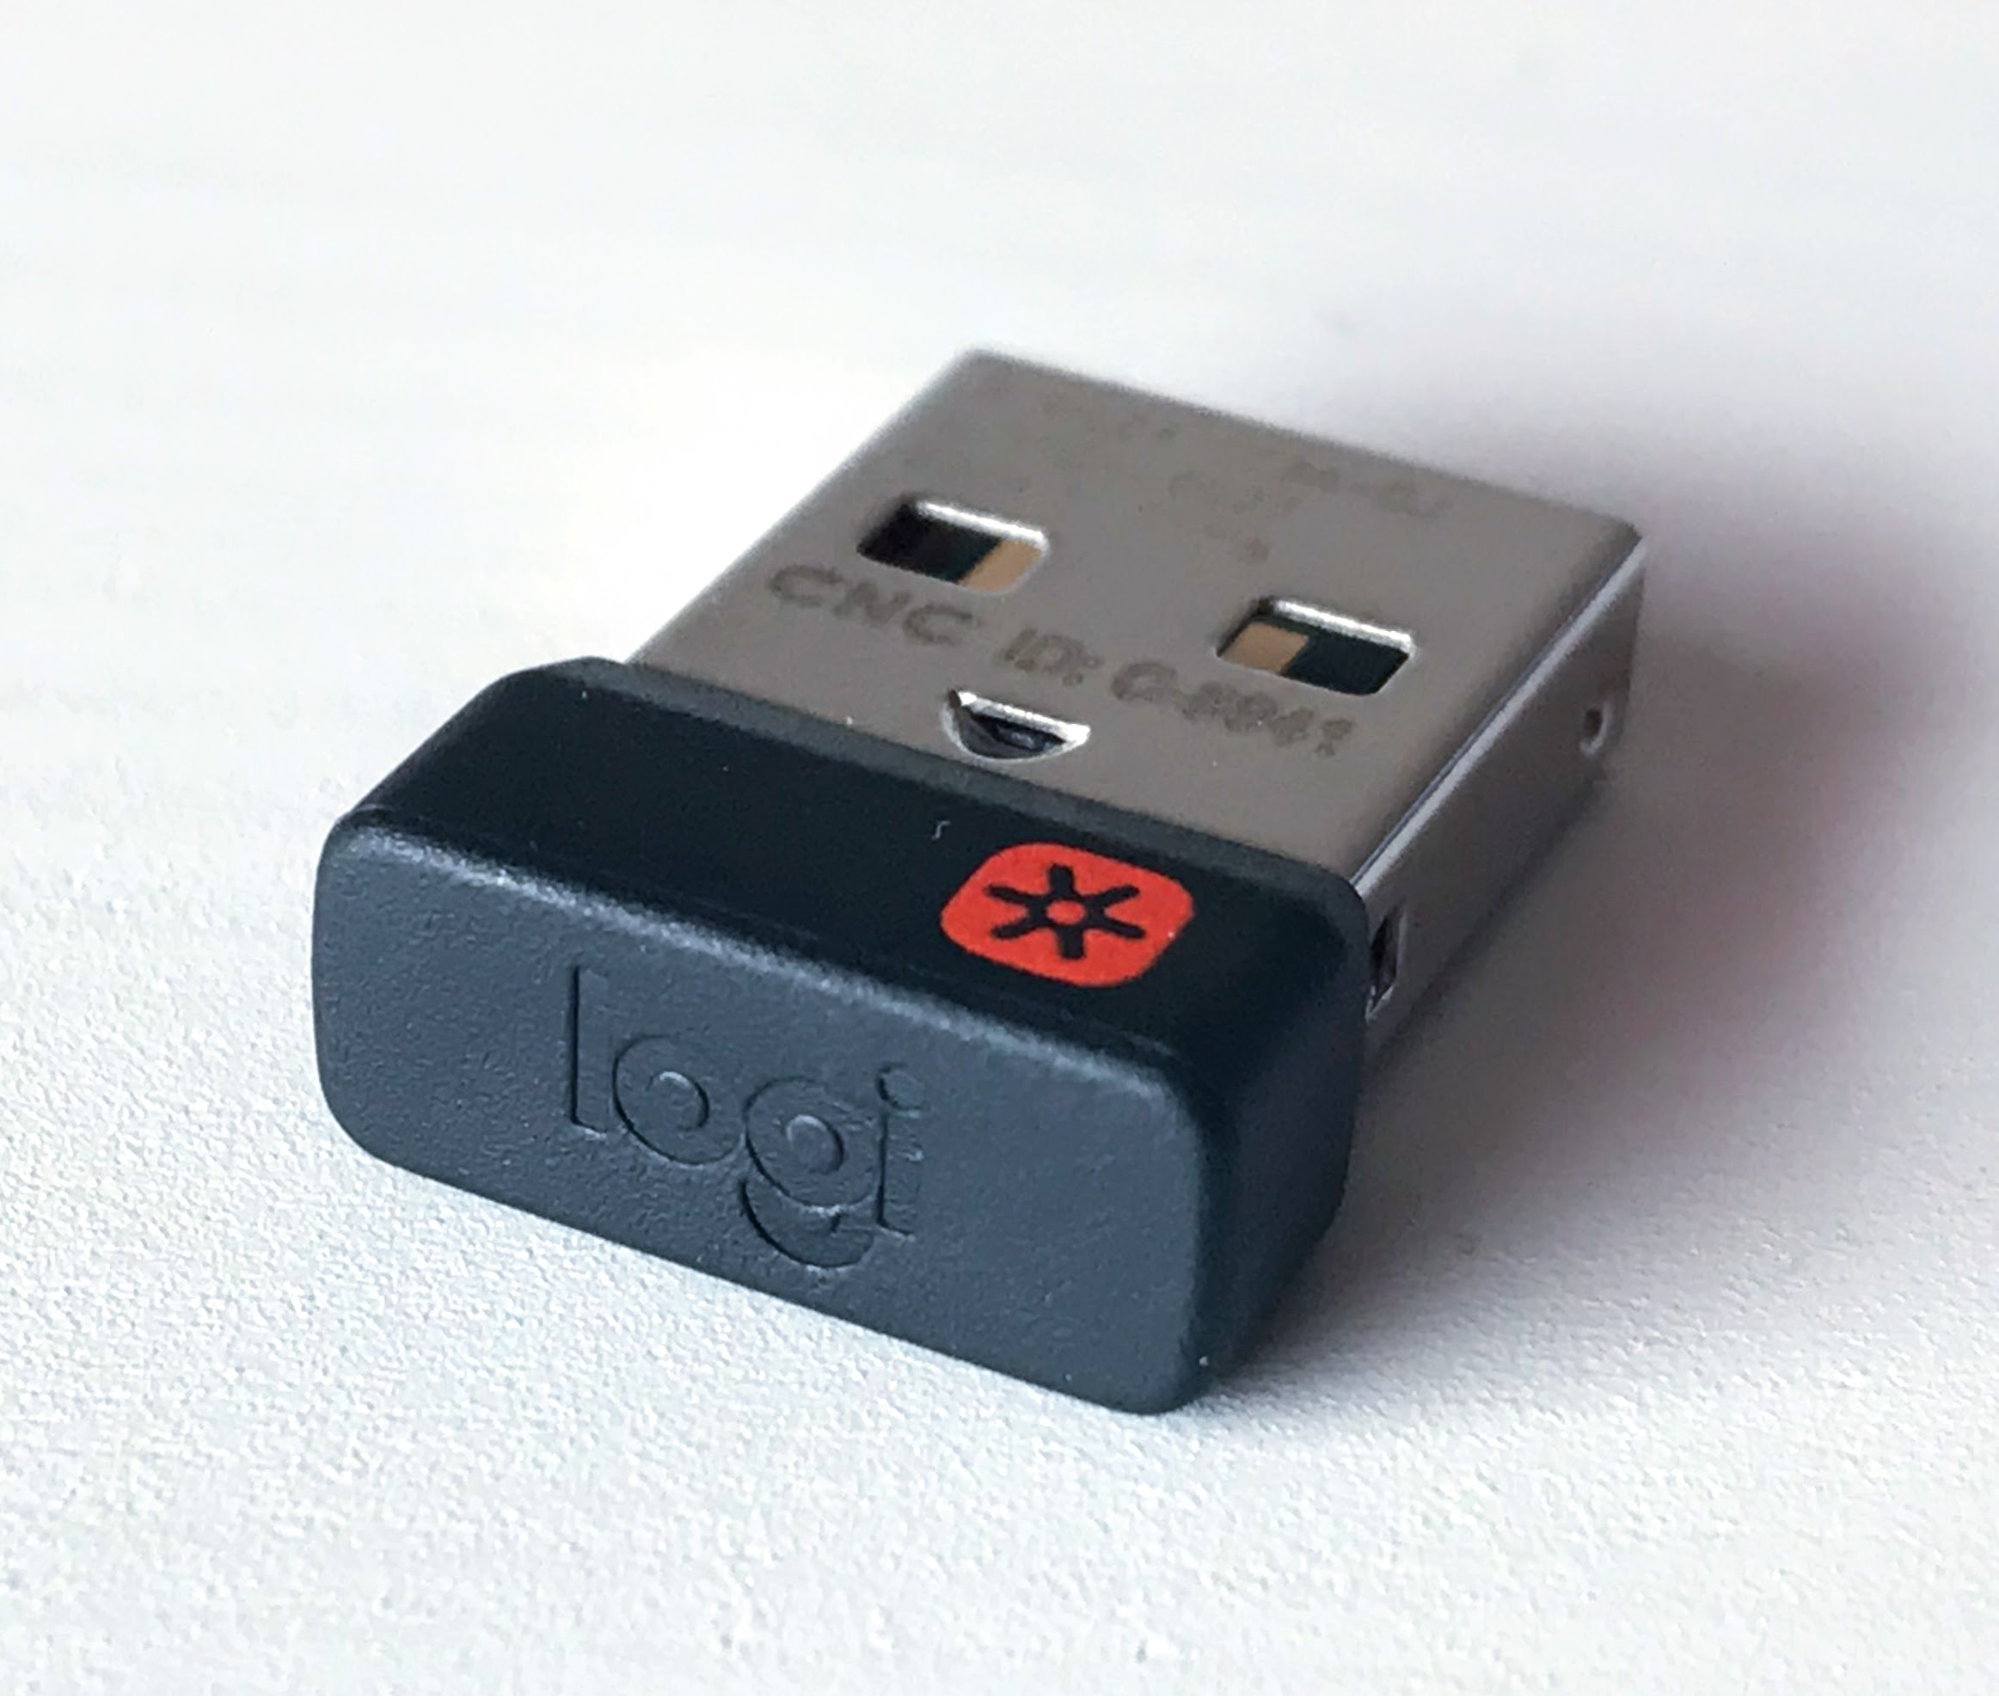 照片中提到了CNC ID: C 4、logt，跟雪絨花航空有關，包含了Logi USB、電腦鼠標、計算機鍵盤、羅技、羅技Unifying接收器